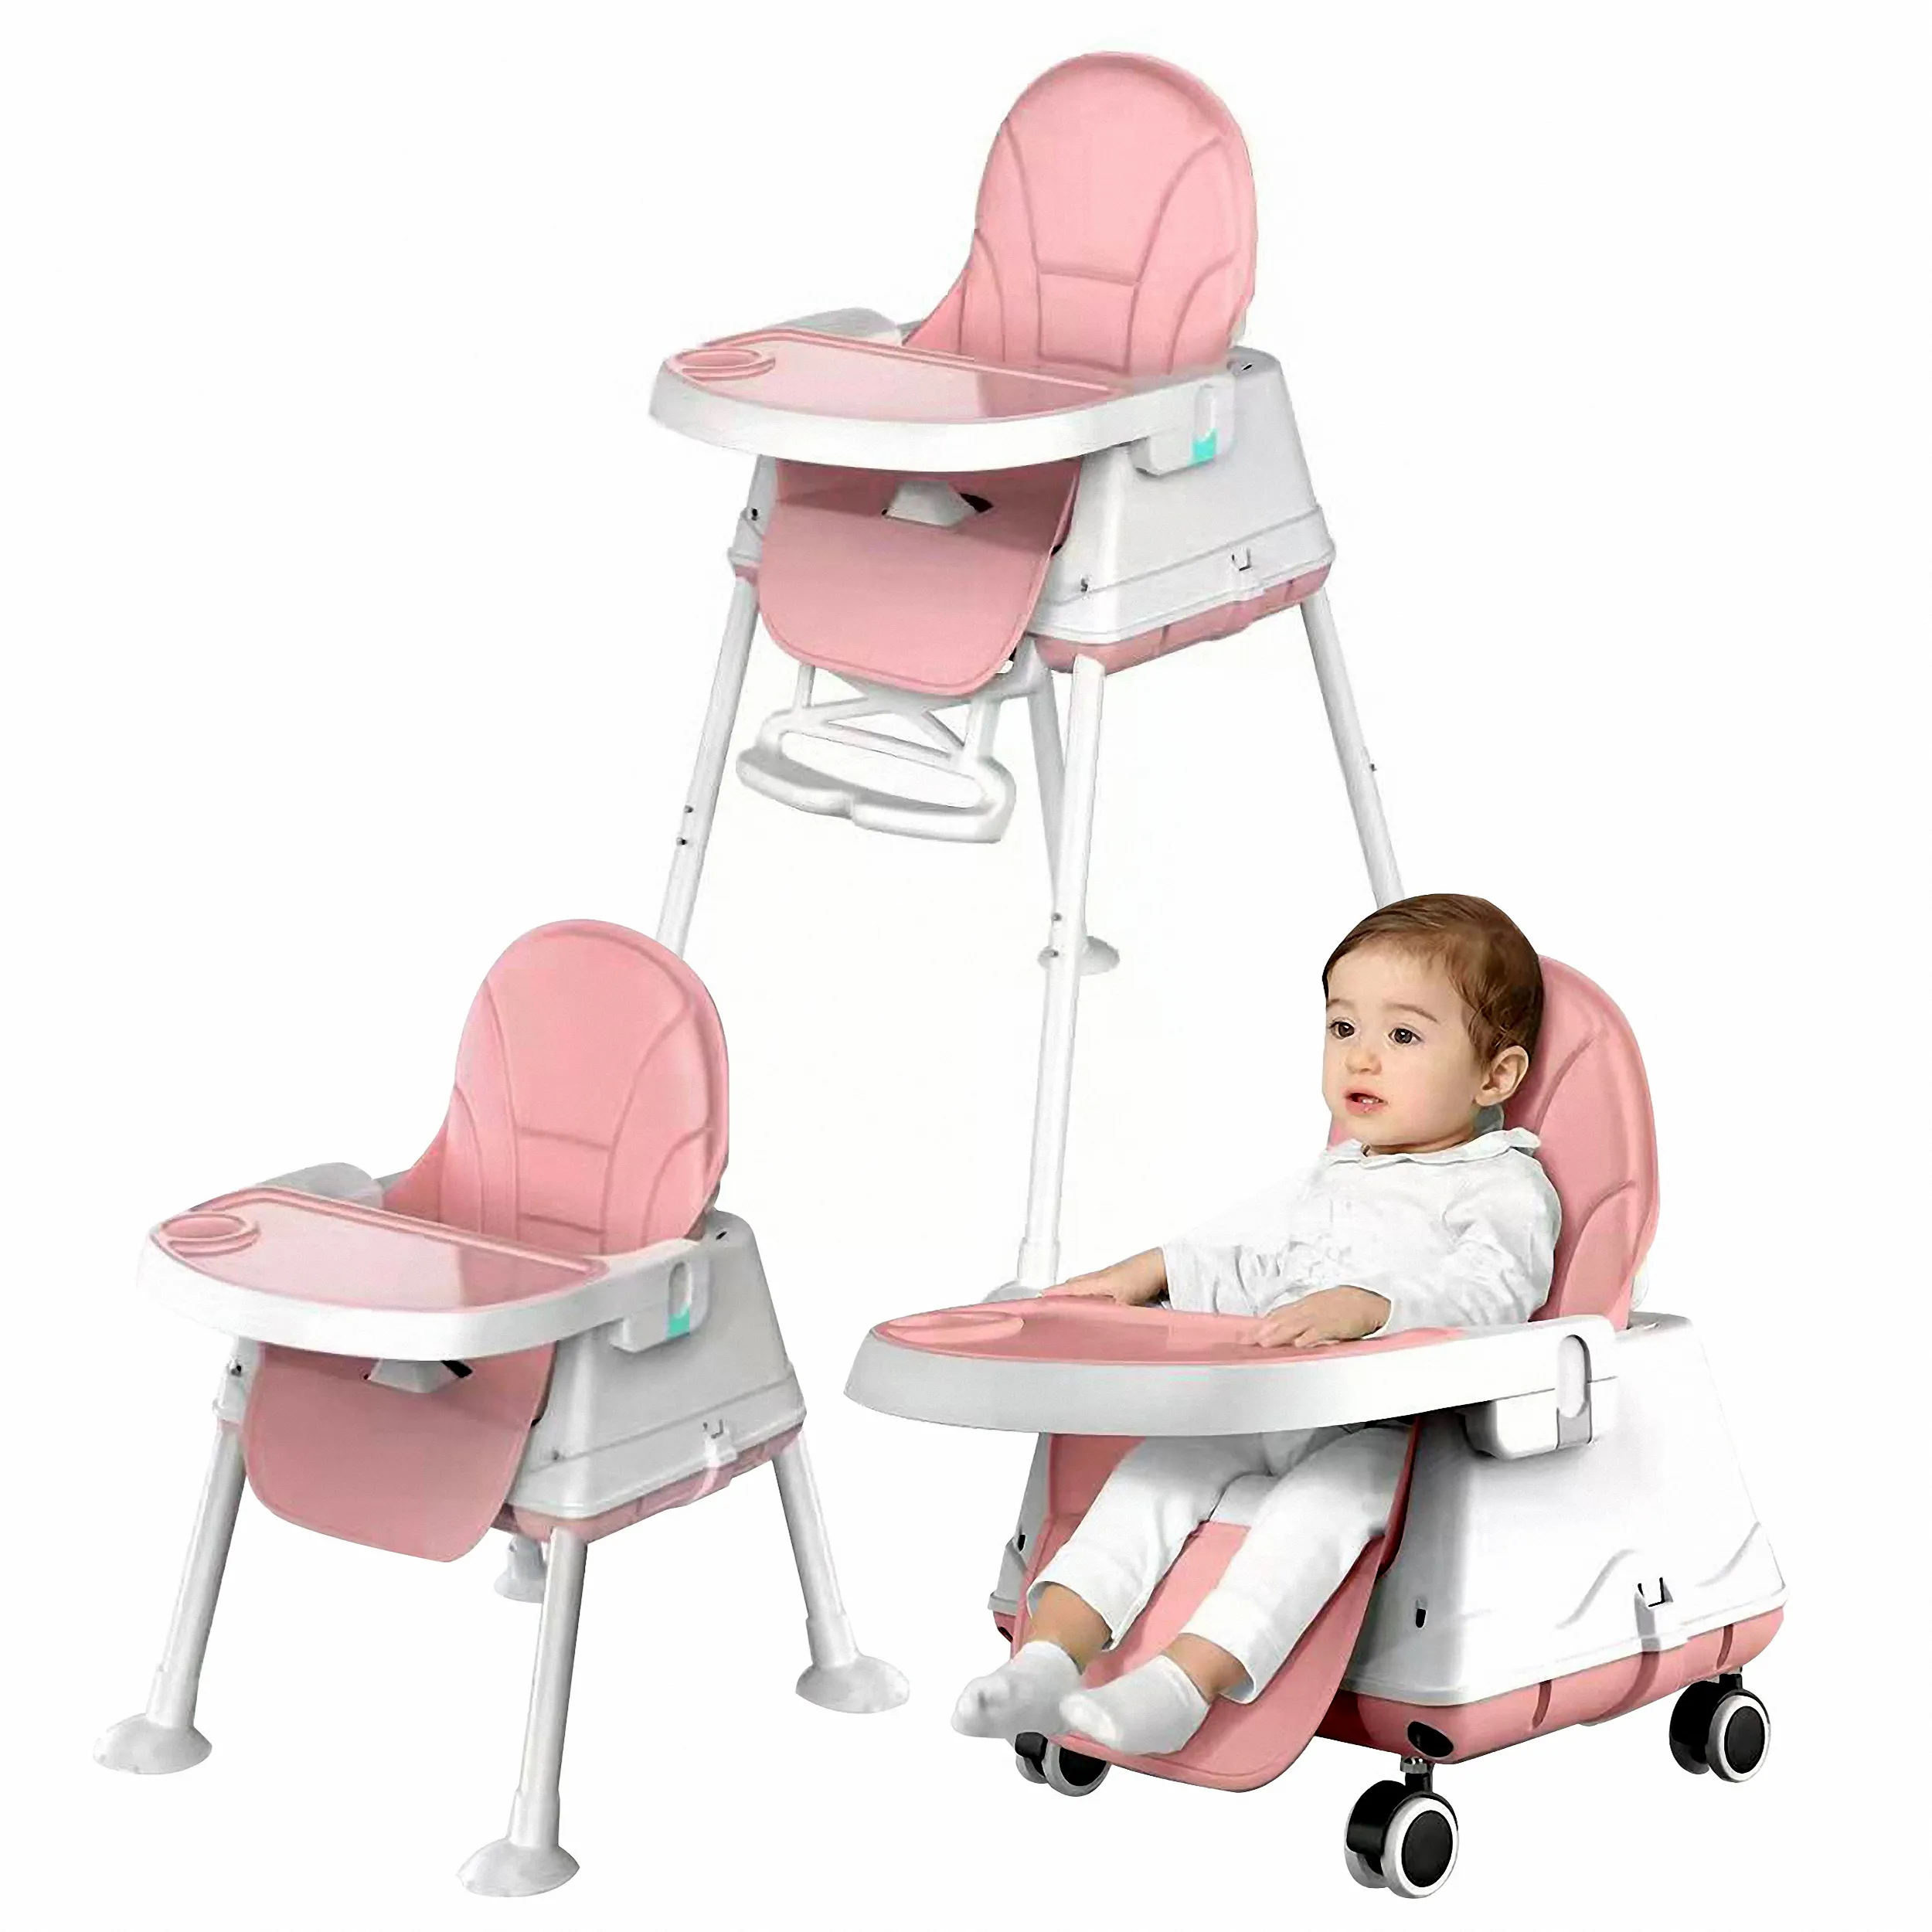 Seggiolone per bambini Amazon tavolo per bambini portatile sedia da pranzo pieghevole seggiolone regolabile in altezza 3 in 1